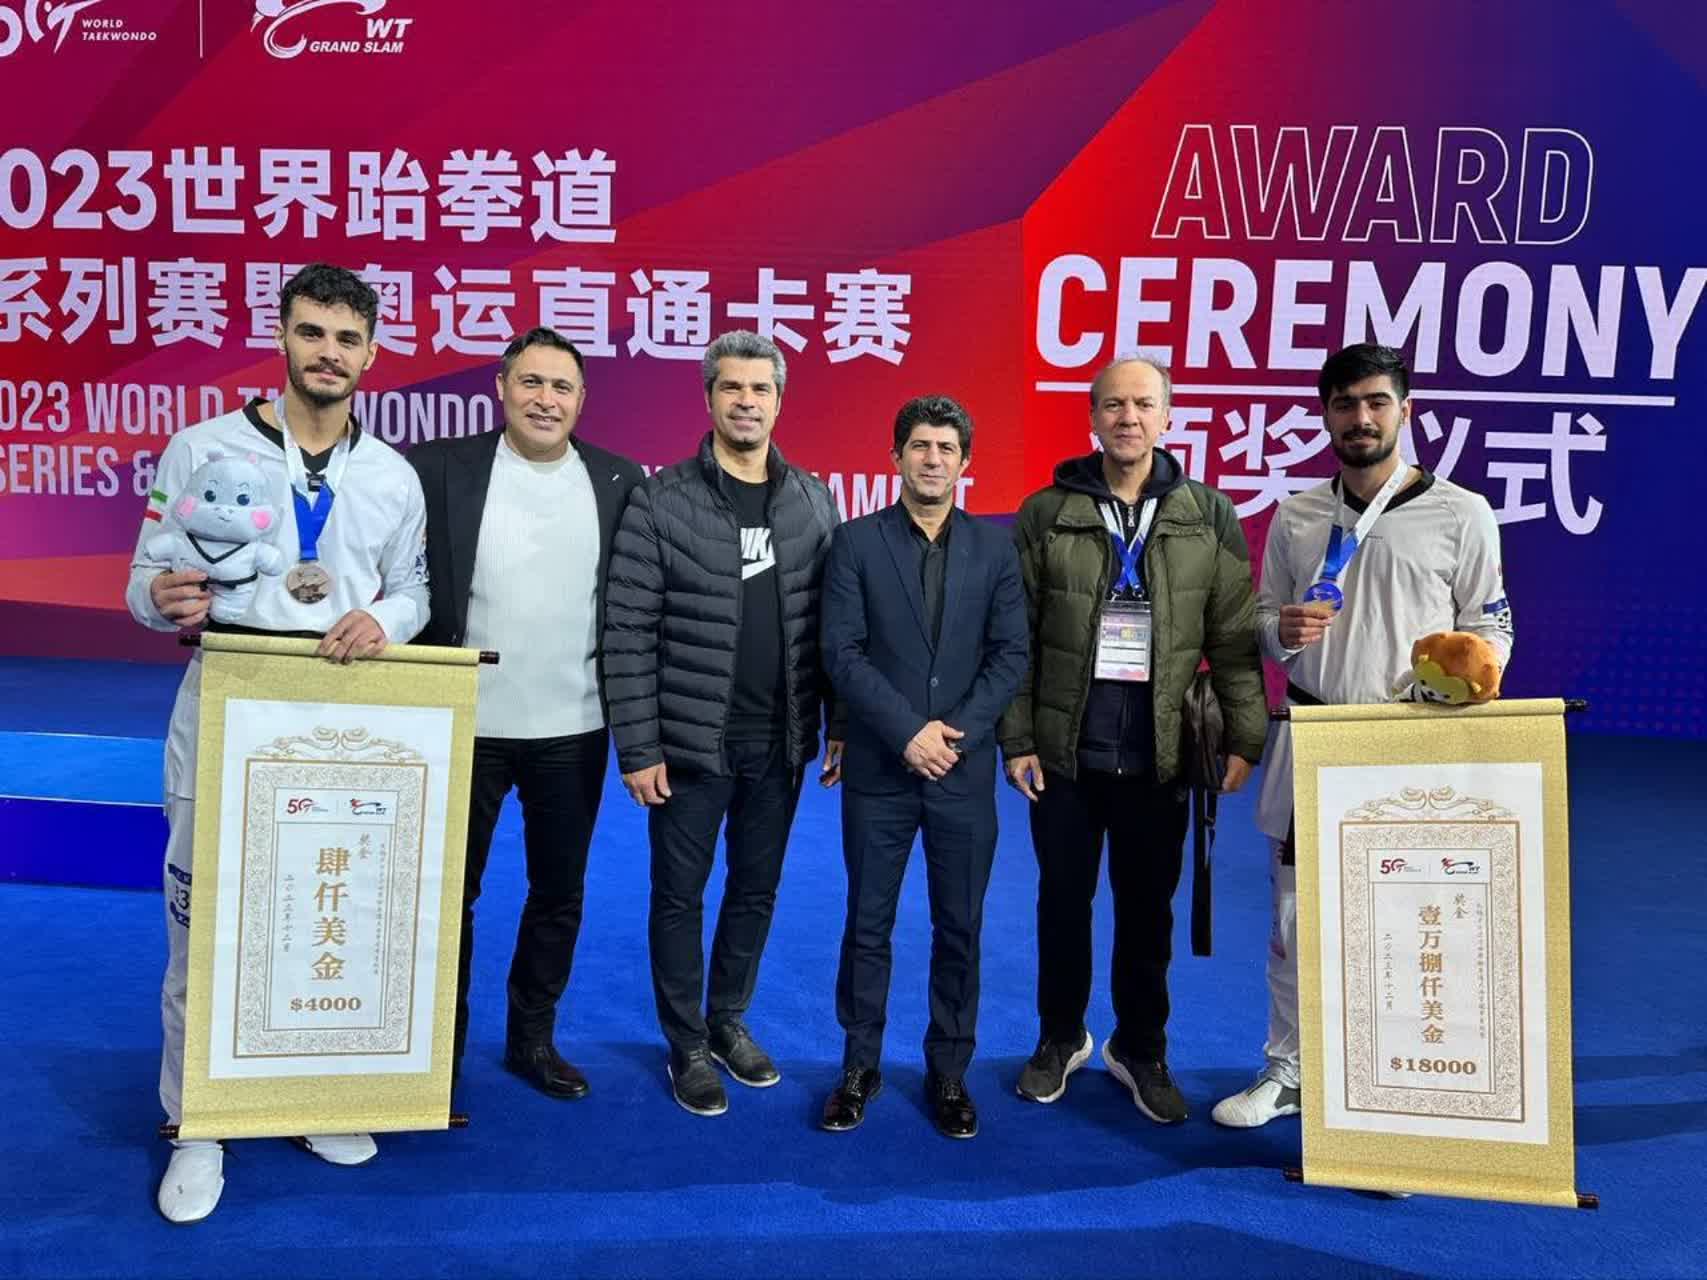 کسب مدال طلای دانشجوی دانشگاه بین المللی امام خمینی (ره)  در مسابقات جهانی گرند اسلم چین